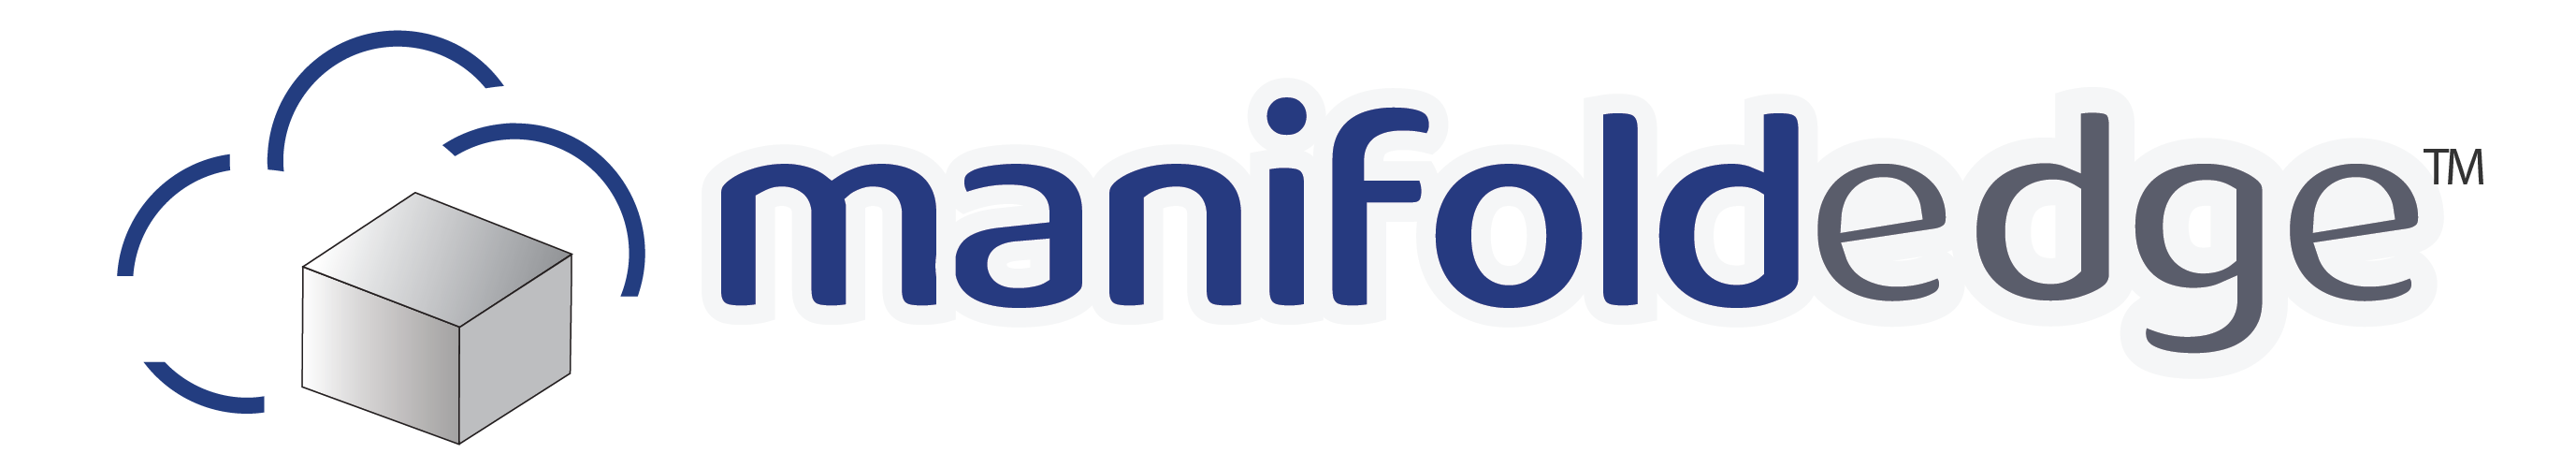 ManifoldEdge logo